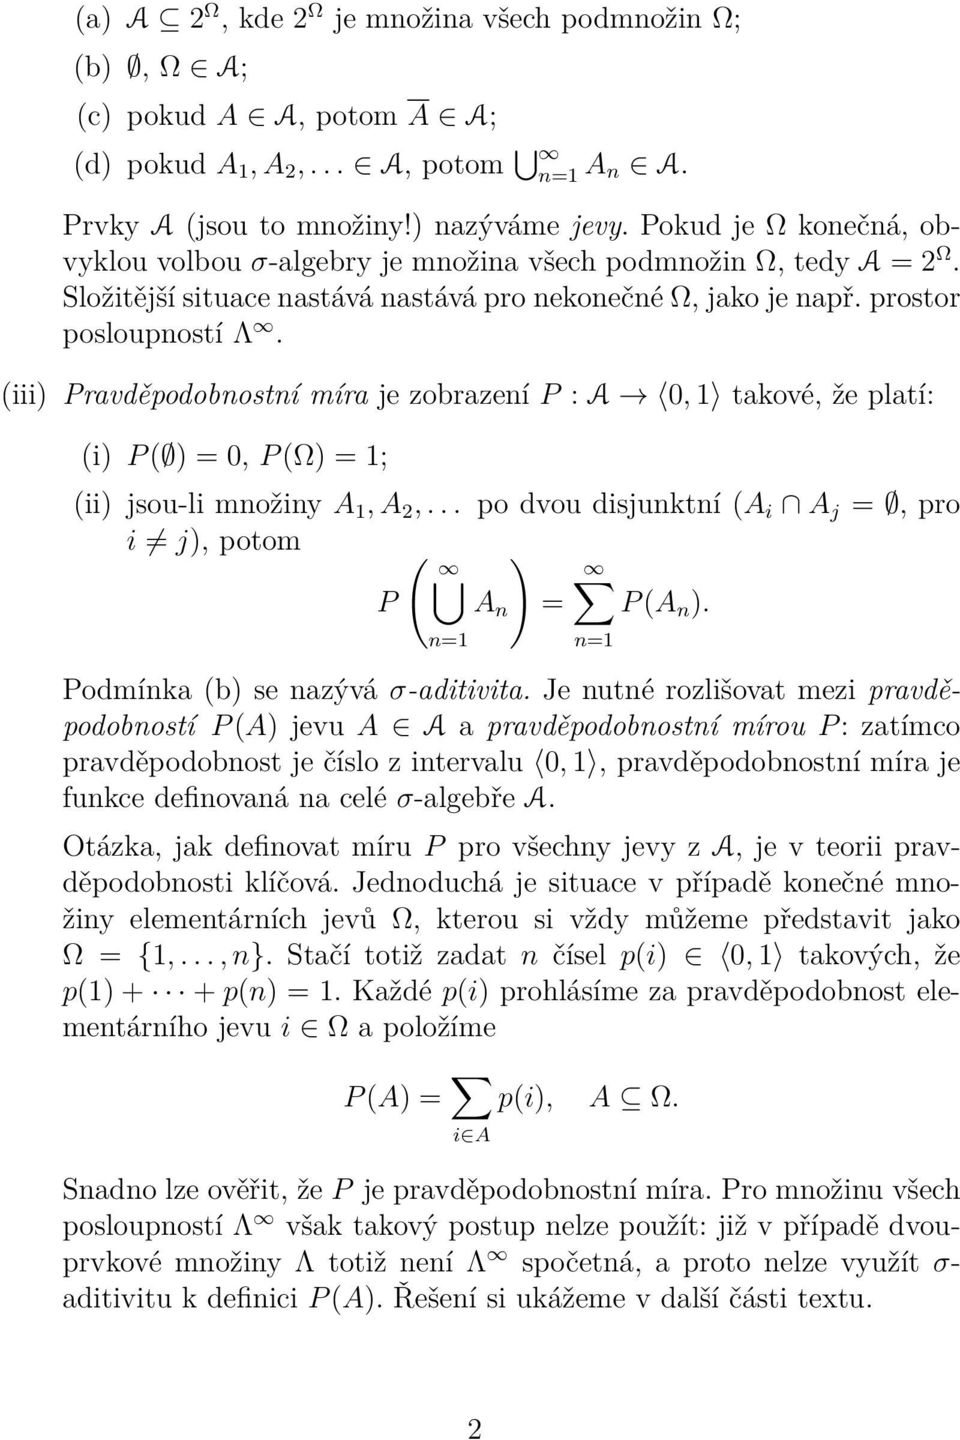 (iii) Pravděpodobnostní míra je zobrazení P : A 0, takové, že platí: (i) P ( ) = 0, P (Ω) = ; (ii) jsou-li množiny A, A 2,... po dvou disjunktní (A i A j =, pro i j), potom ( ) P A n = P (A n ).